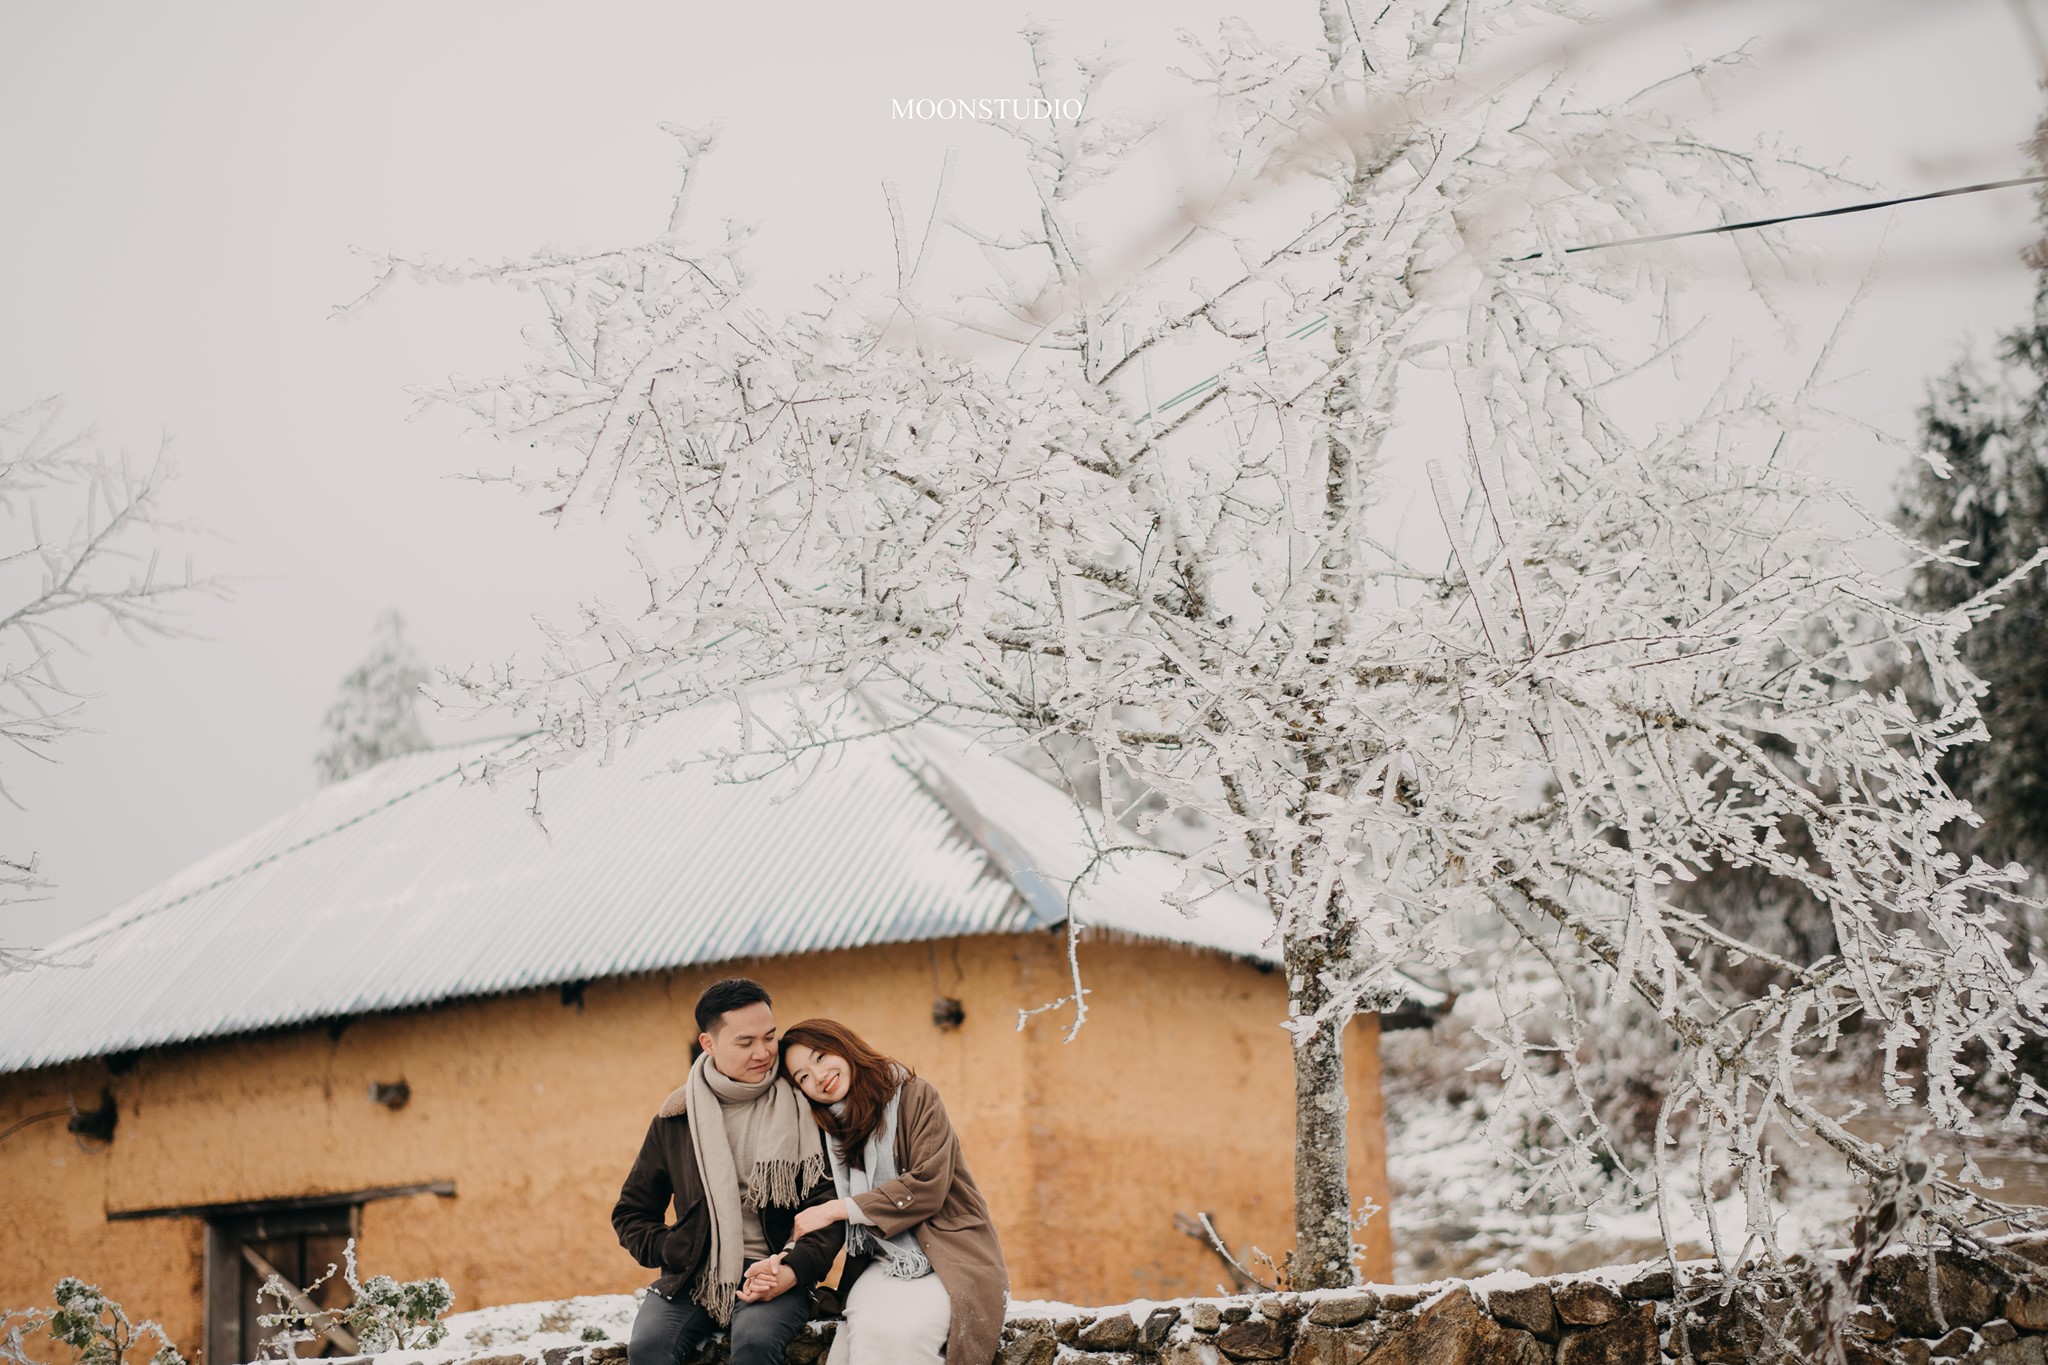 Với ảnh cưới tuyết, bạn sẽ được điểm tô cho ngày trọng đại của mình với khung cảnh trắng xóa đầy mộng mơ. Những tia nắng len lỏi qua cây cối tạo ra những mảng sáng tuyệt đẹp, làm nền cho bức ảnh cưới nổi bật hơn bao giờ hết.